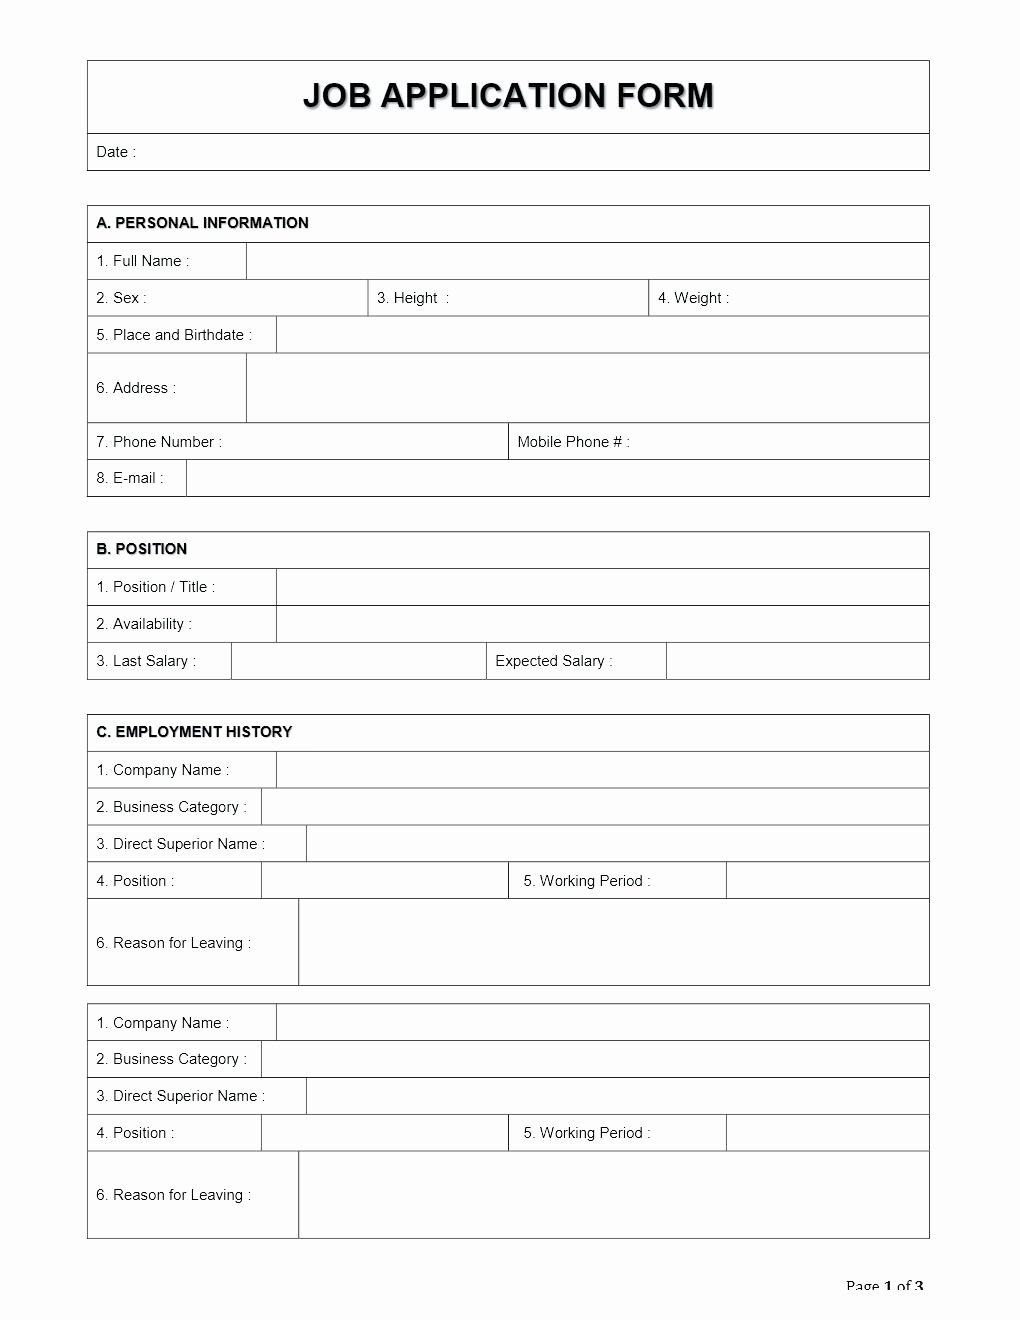 Registration forms Template Fr Staruptalent